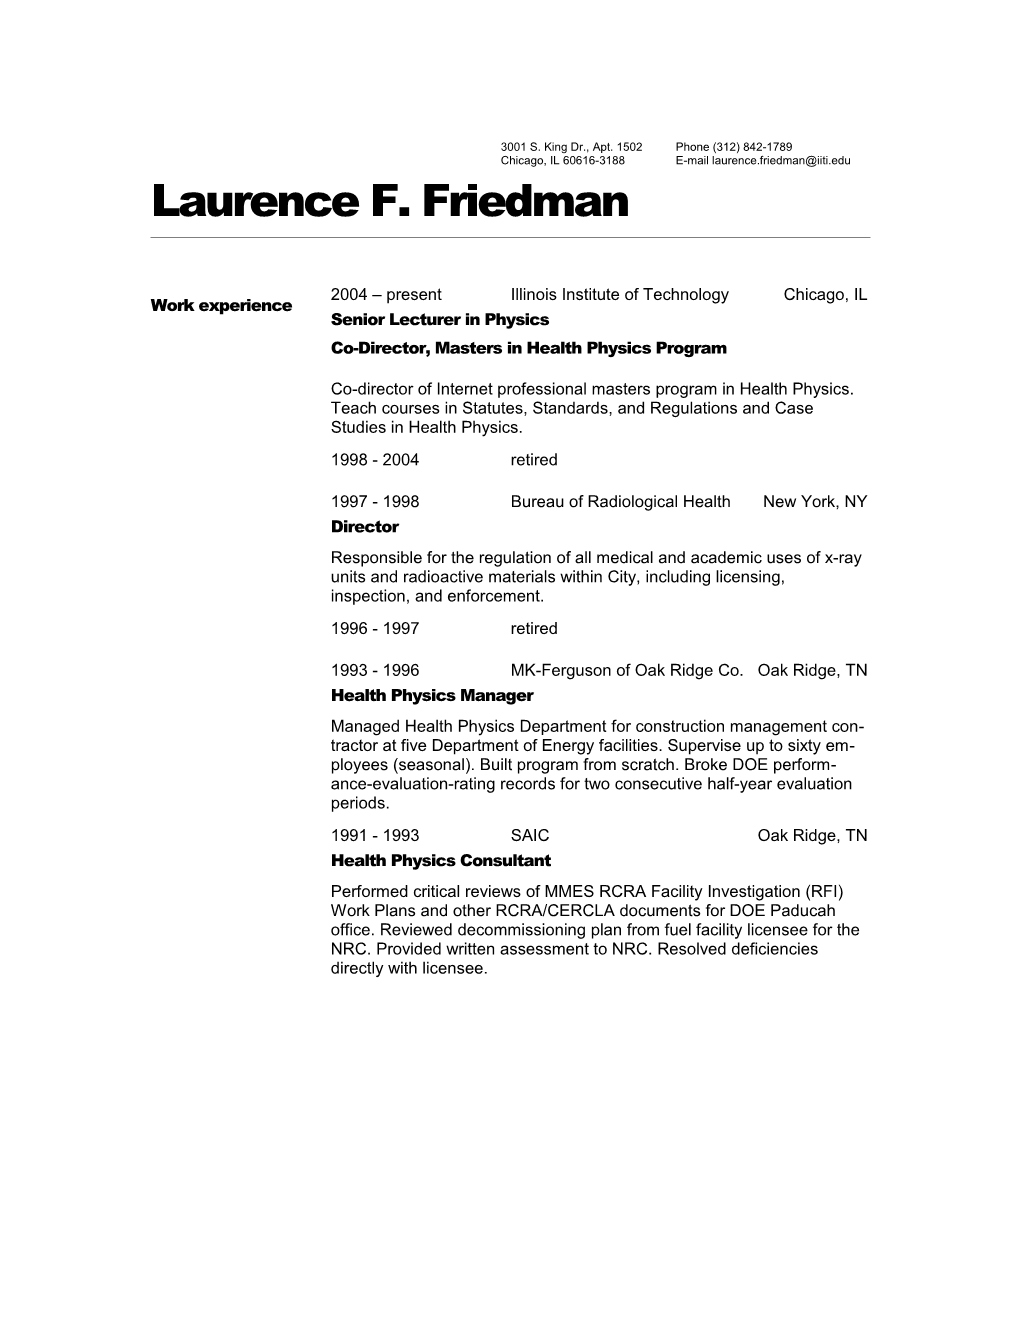 Laurence F. Friedman